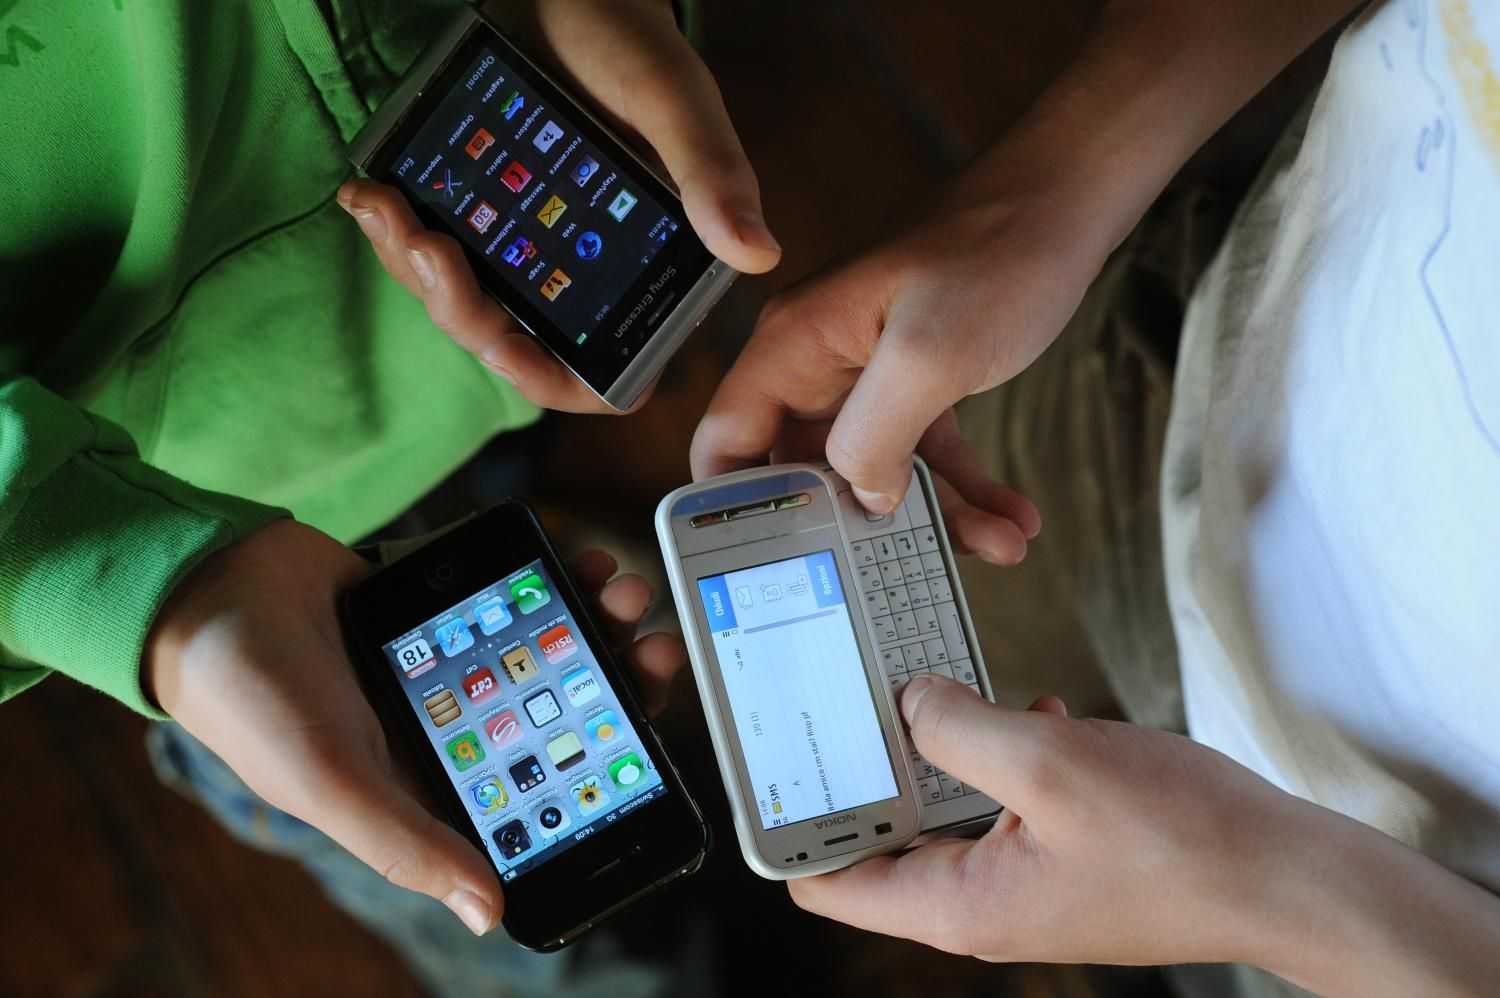 Tar, ministeri informeranno la popolazione sui rischi dei cellulari